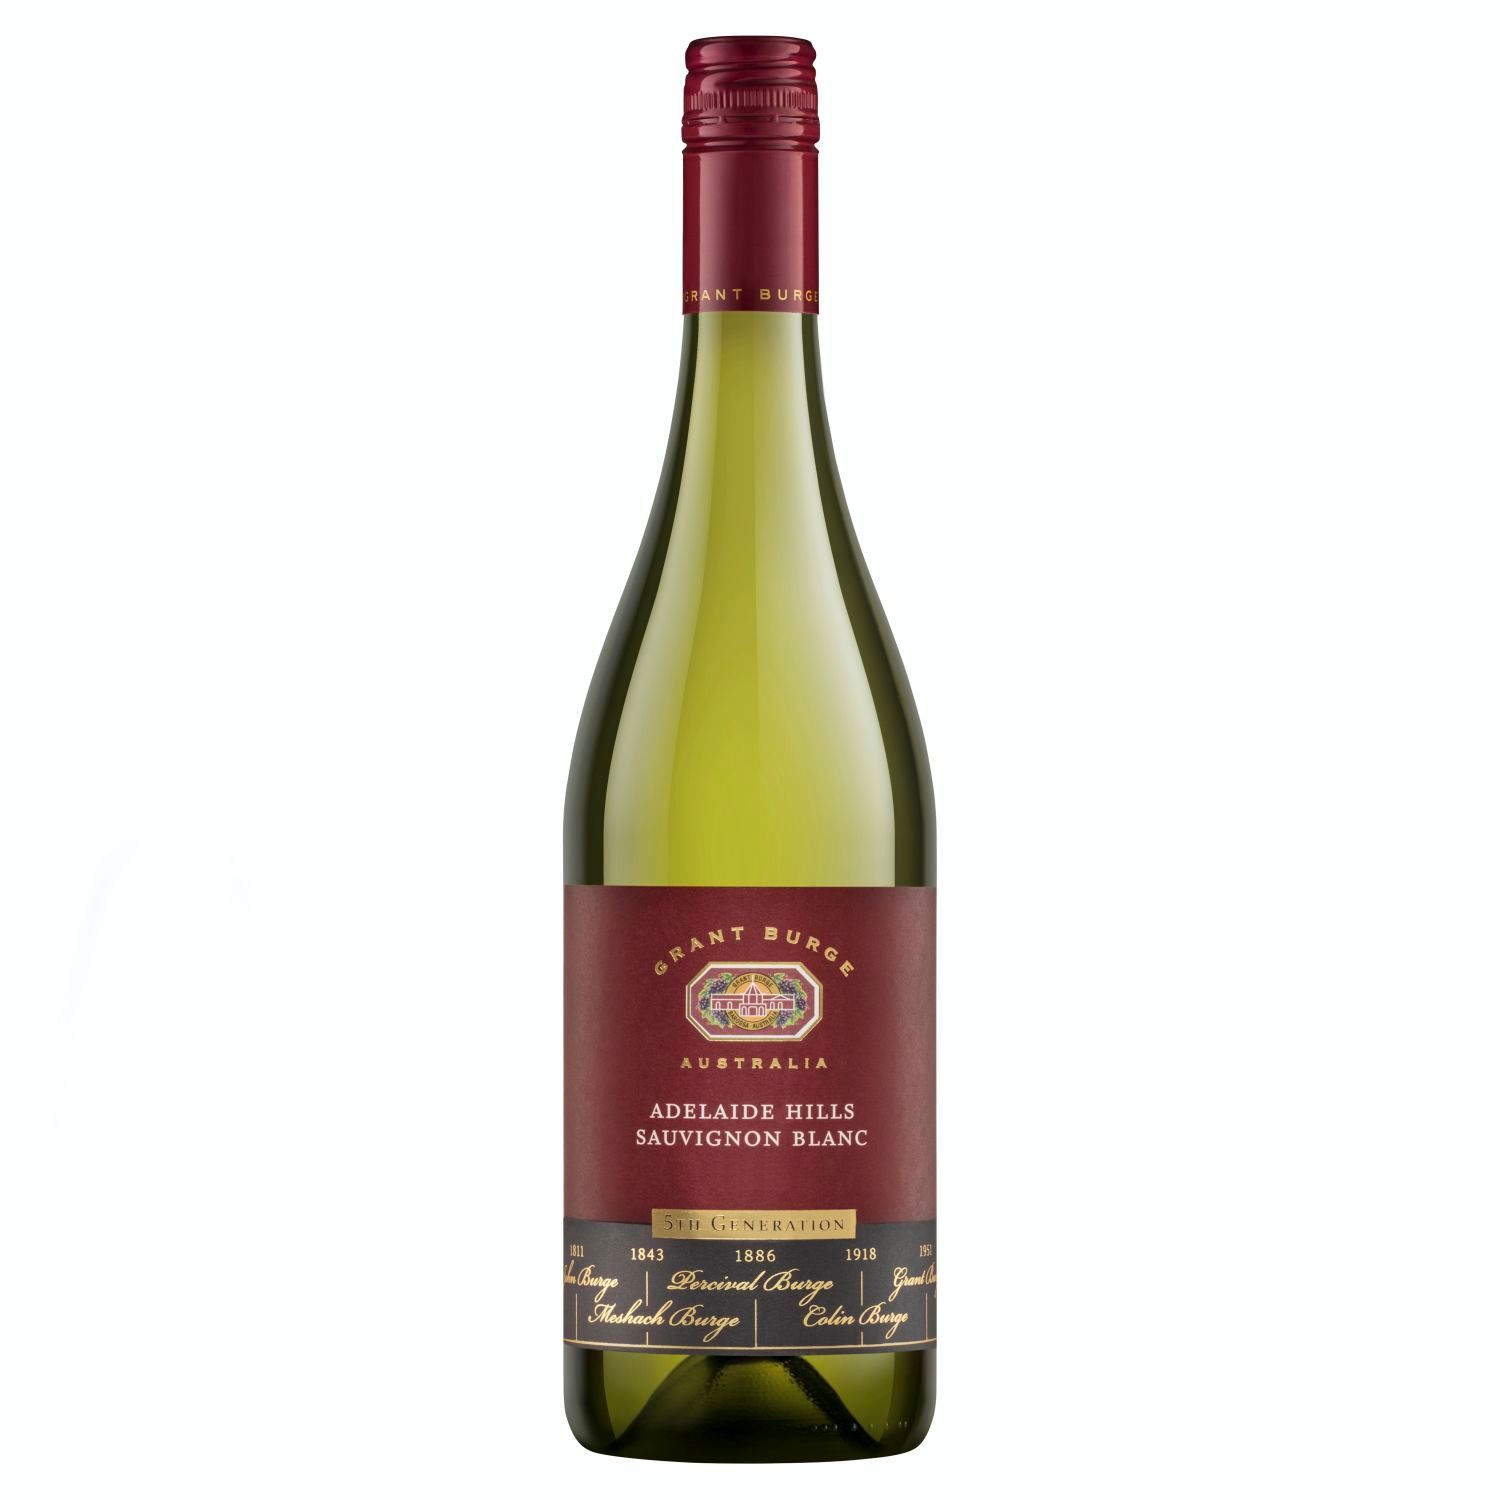 Grant Burge 5th Generation Barossa Sauvignon Blanc 750mL<br /> <br />Alcohol Volume: 13.00%<br /><br />Pack Format: Bottle<br /><br />Standard Drinks: 7.7</br /><br />Pack Type: Bottle<br /><br />Country of Origin: Australia<br /><br />Region: Adelaide Hills<br /><br />Vintage: '2019<br />